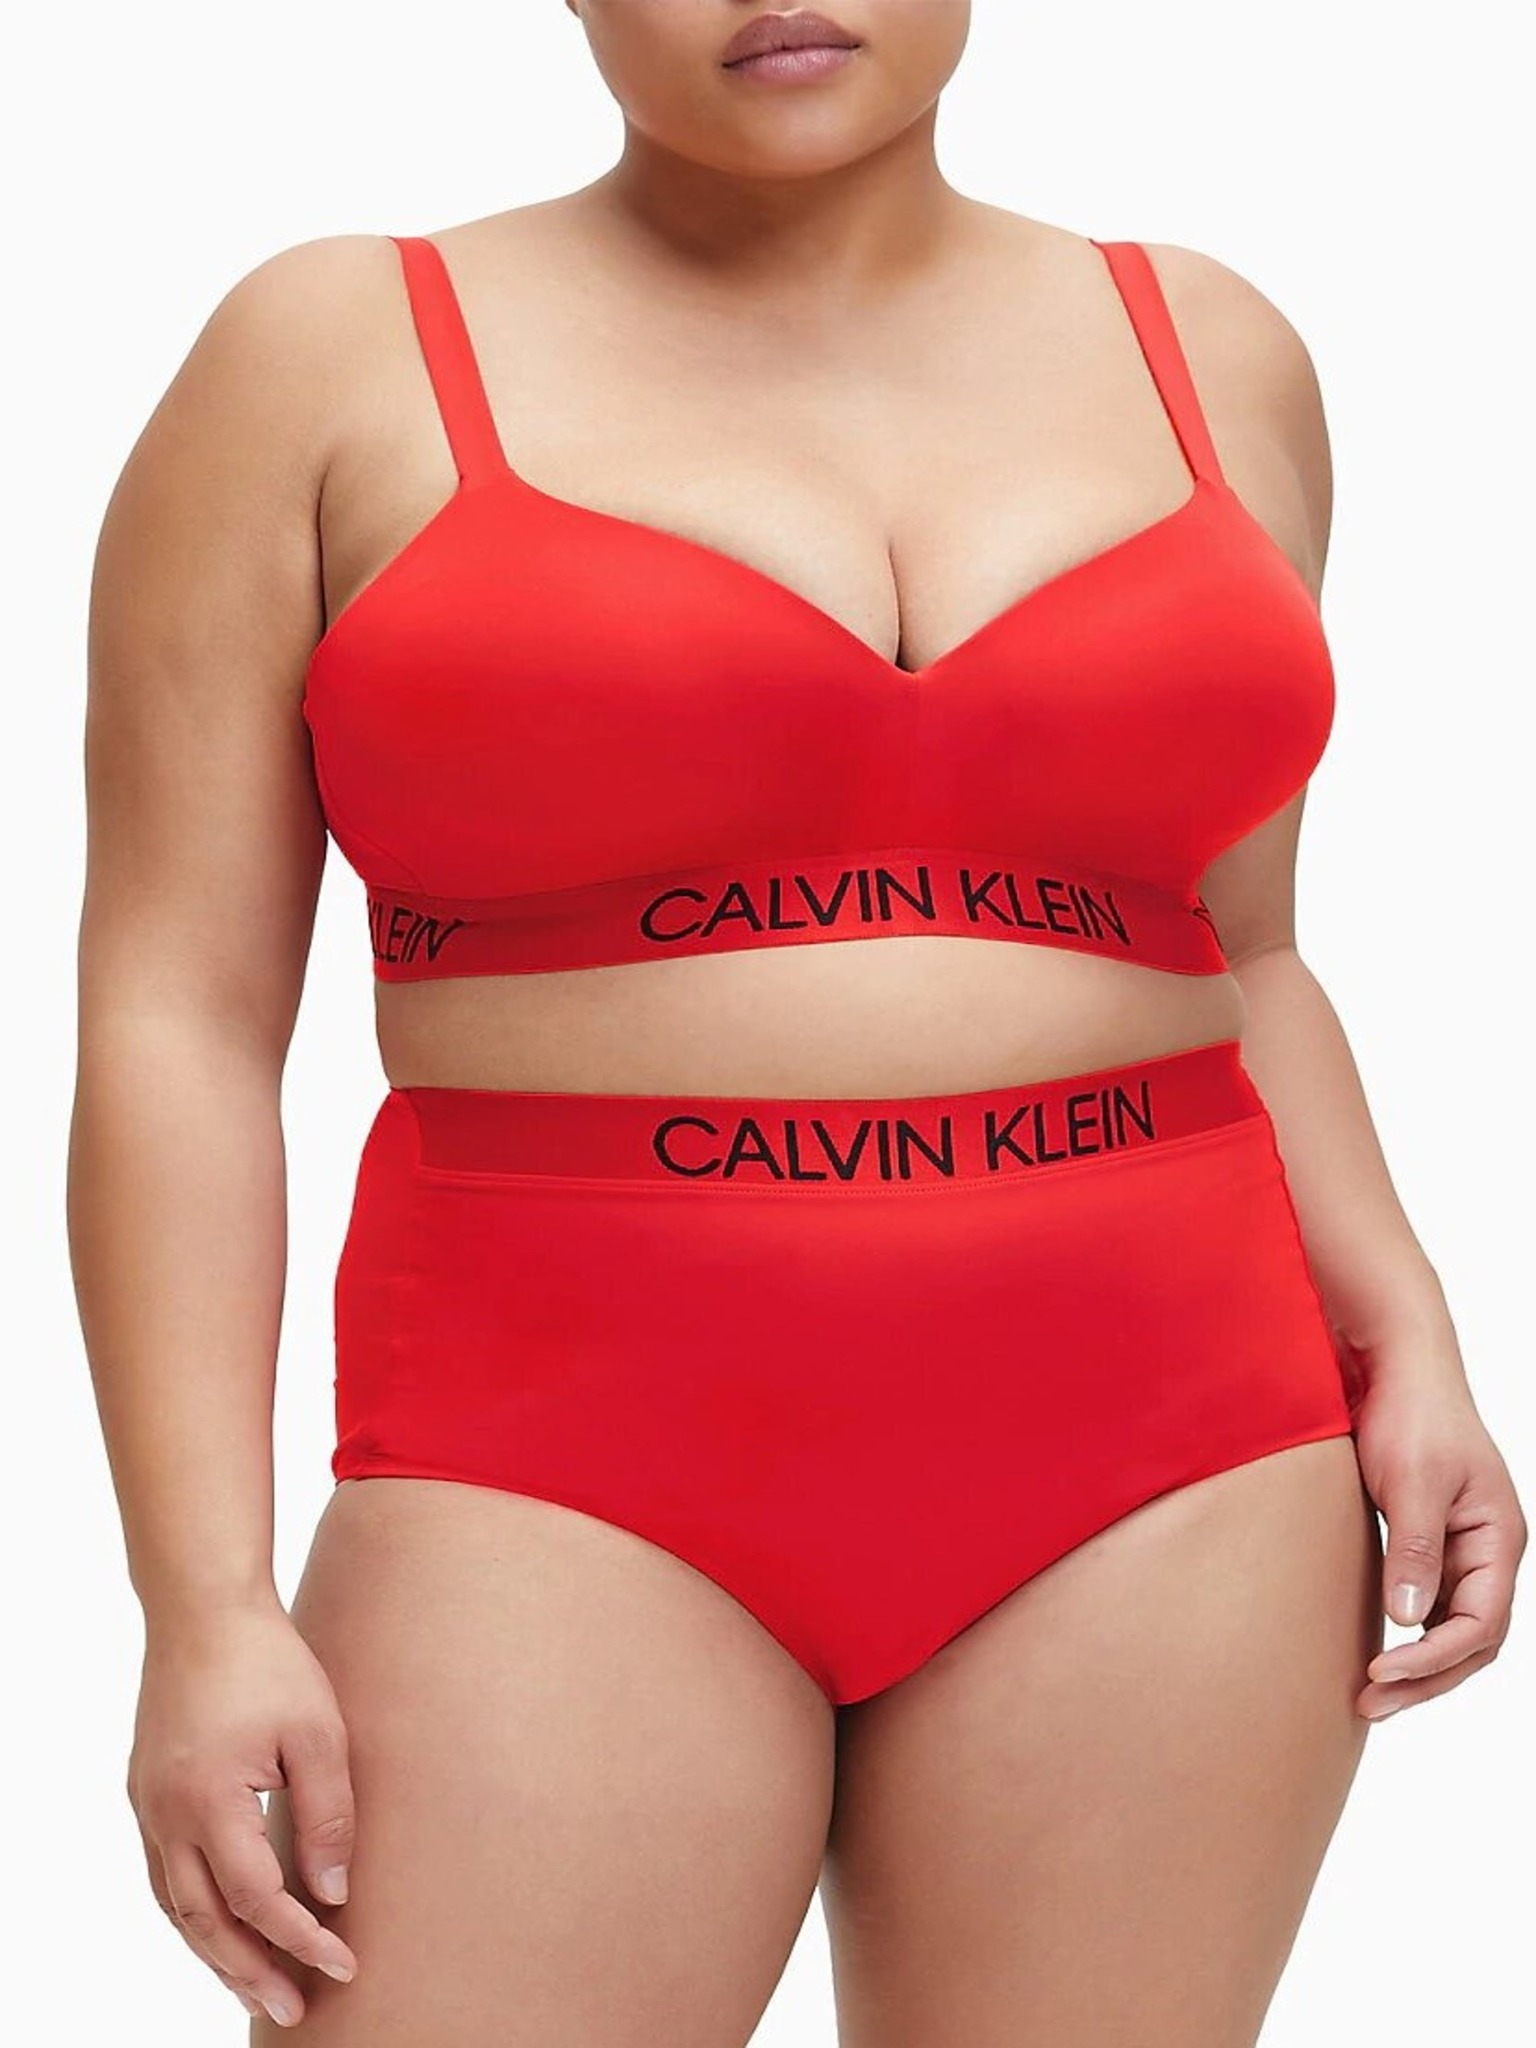 Buy Calvin Klein Underwear Bralette - Red